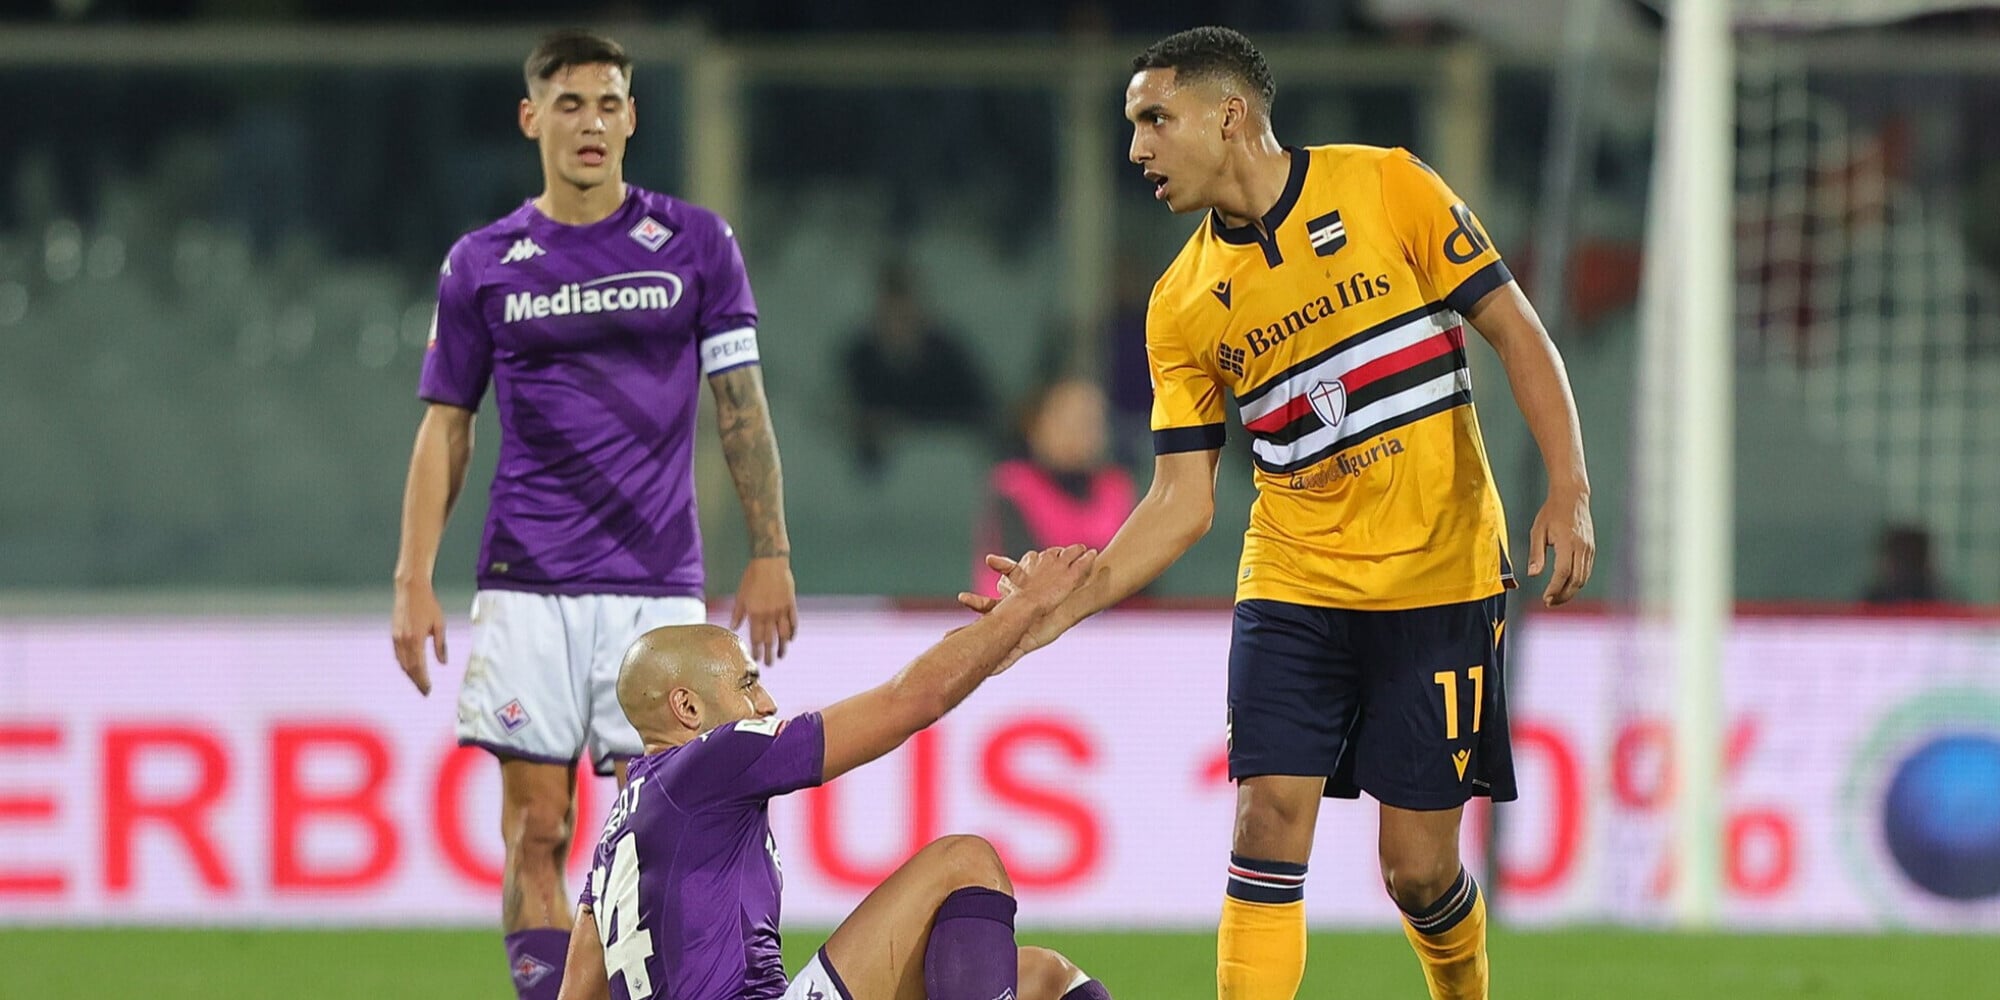 Corriere dello Sport – Fiorentina, nuova offerta per Sabiri da 2,5 milioni: oggi si decide